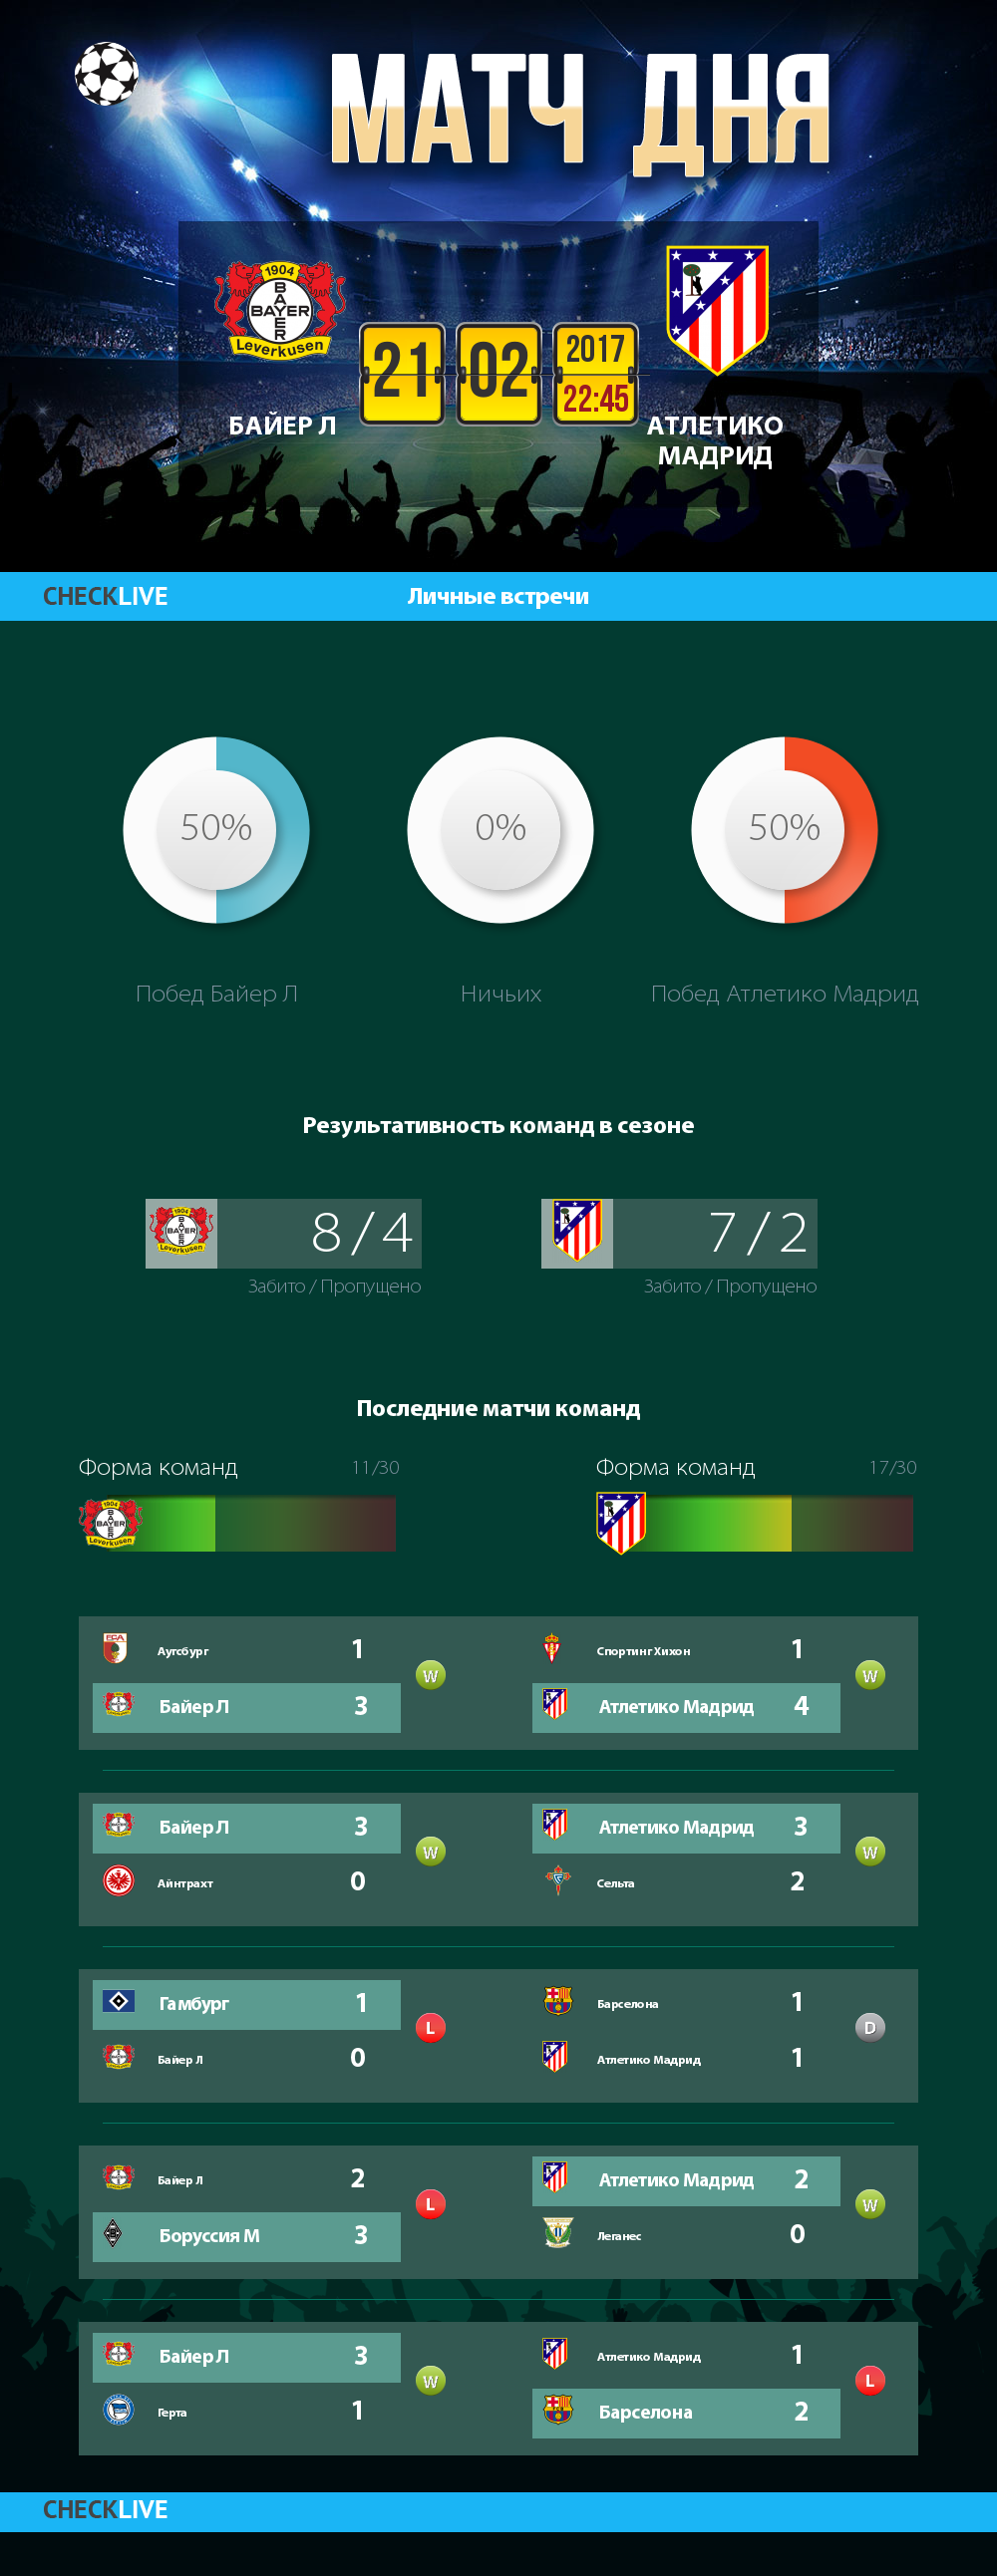 Инфографика Байер Л и Атлетико Мадрид матч дня 21.02.2017